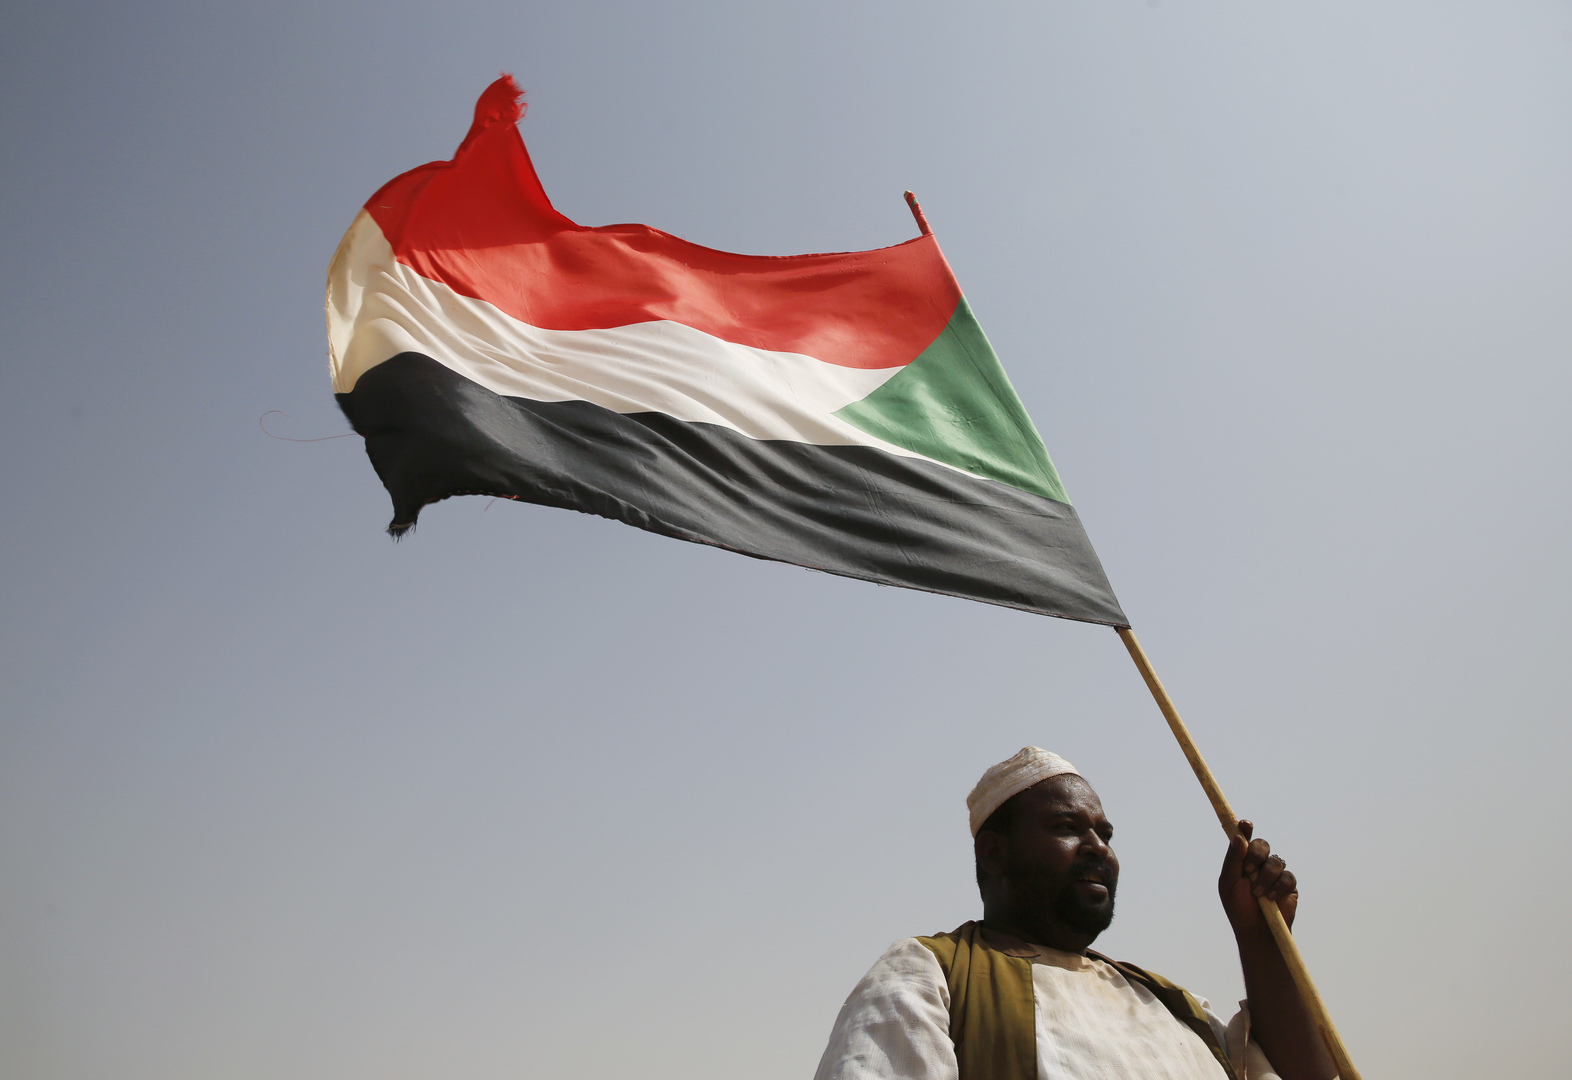 تجمع المهنيين في السودان يطلق دعوة للخروج في مليونية 31 مارس